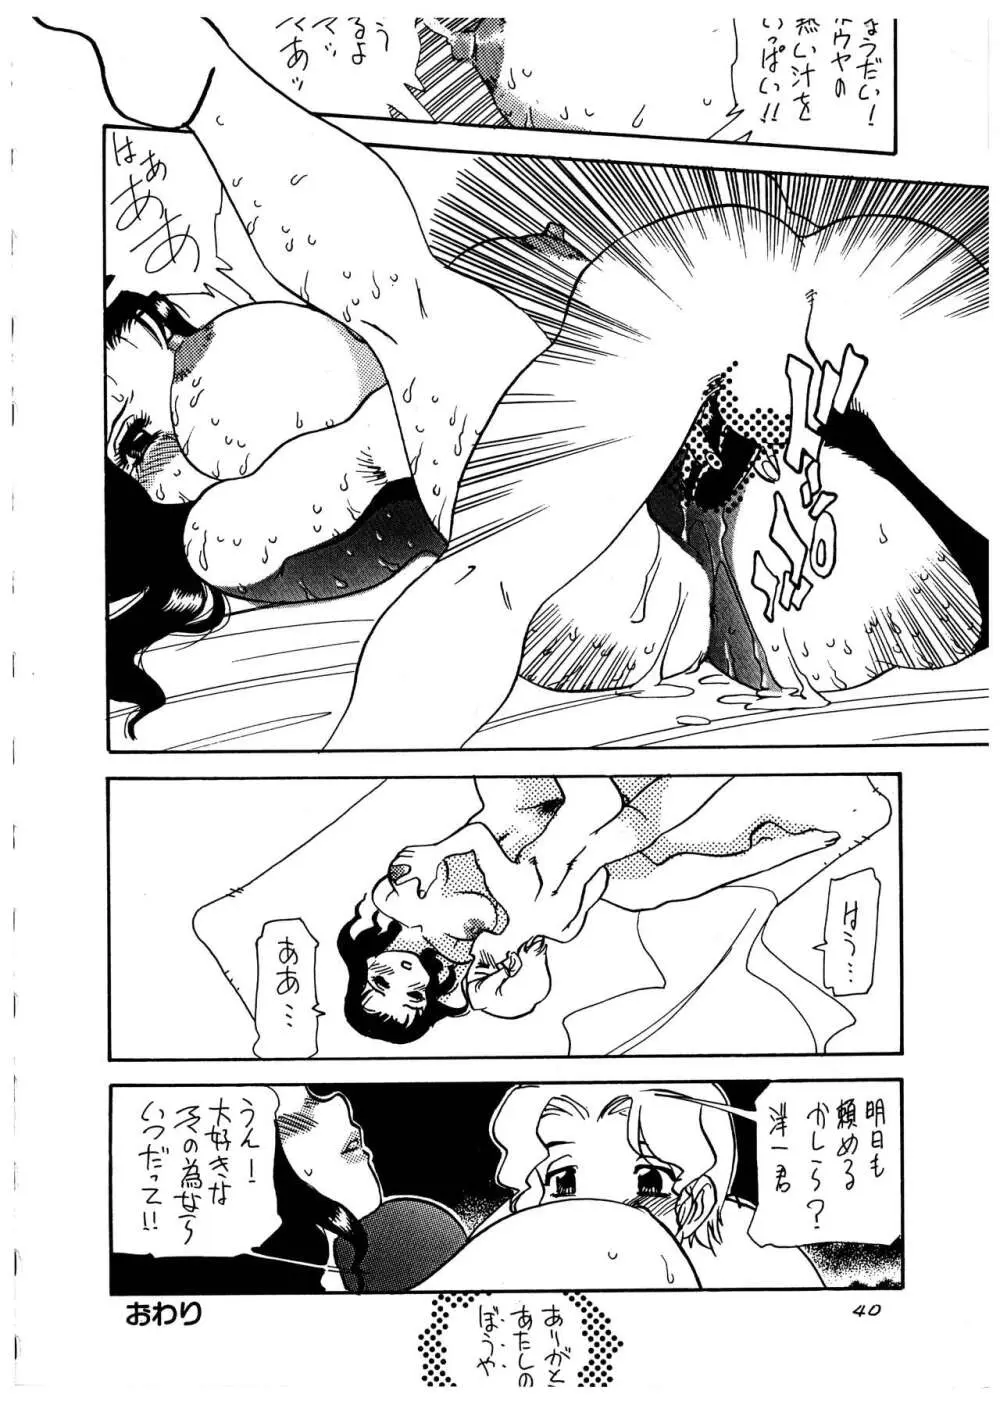 桃庵 vol.1 - page40